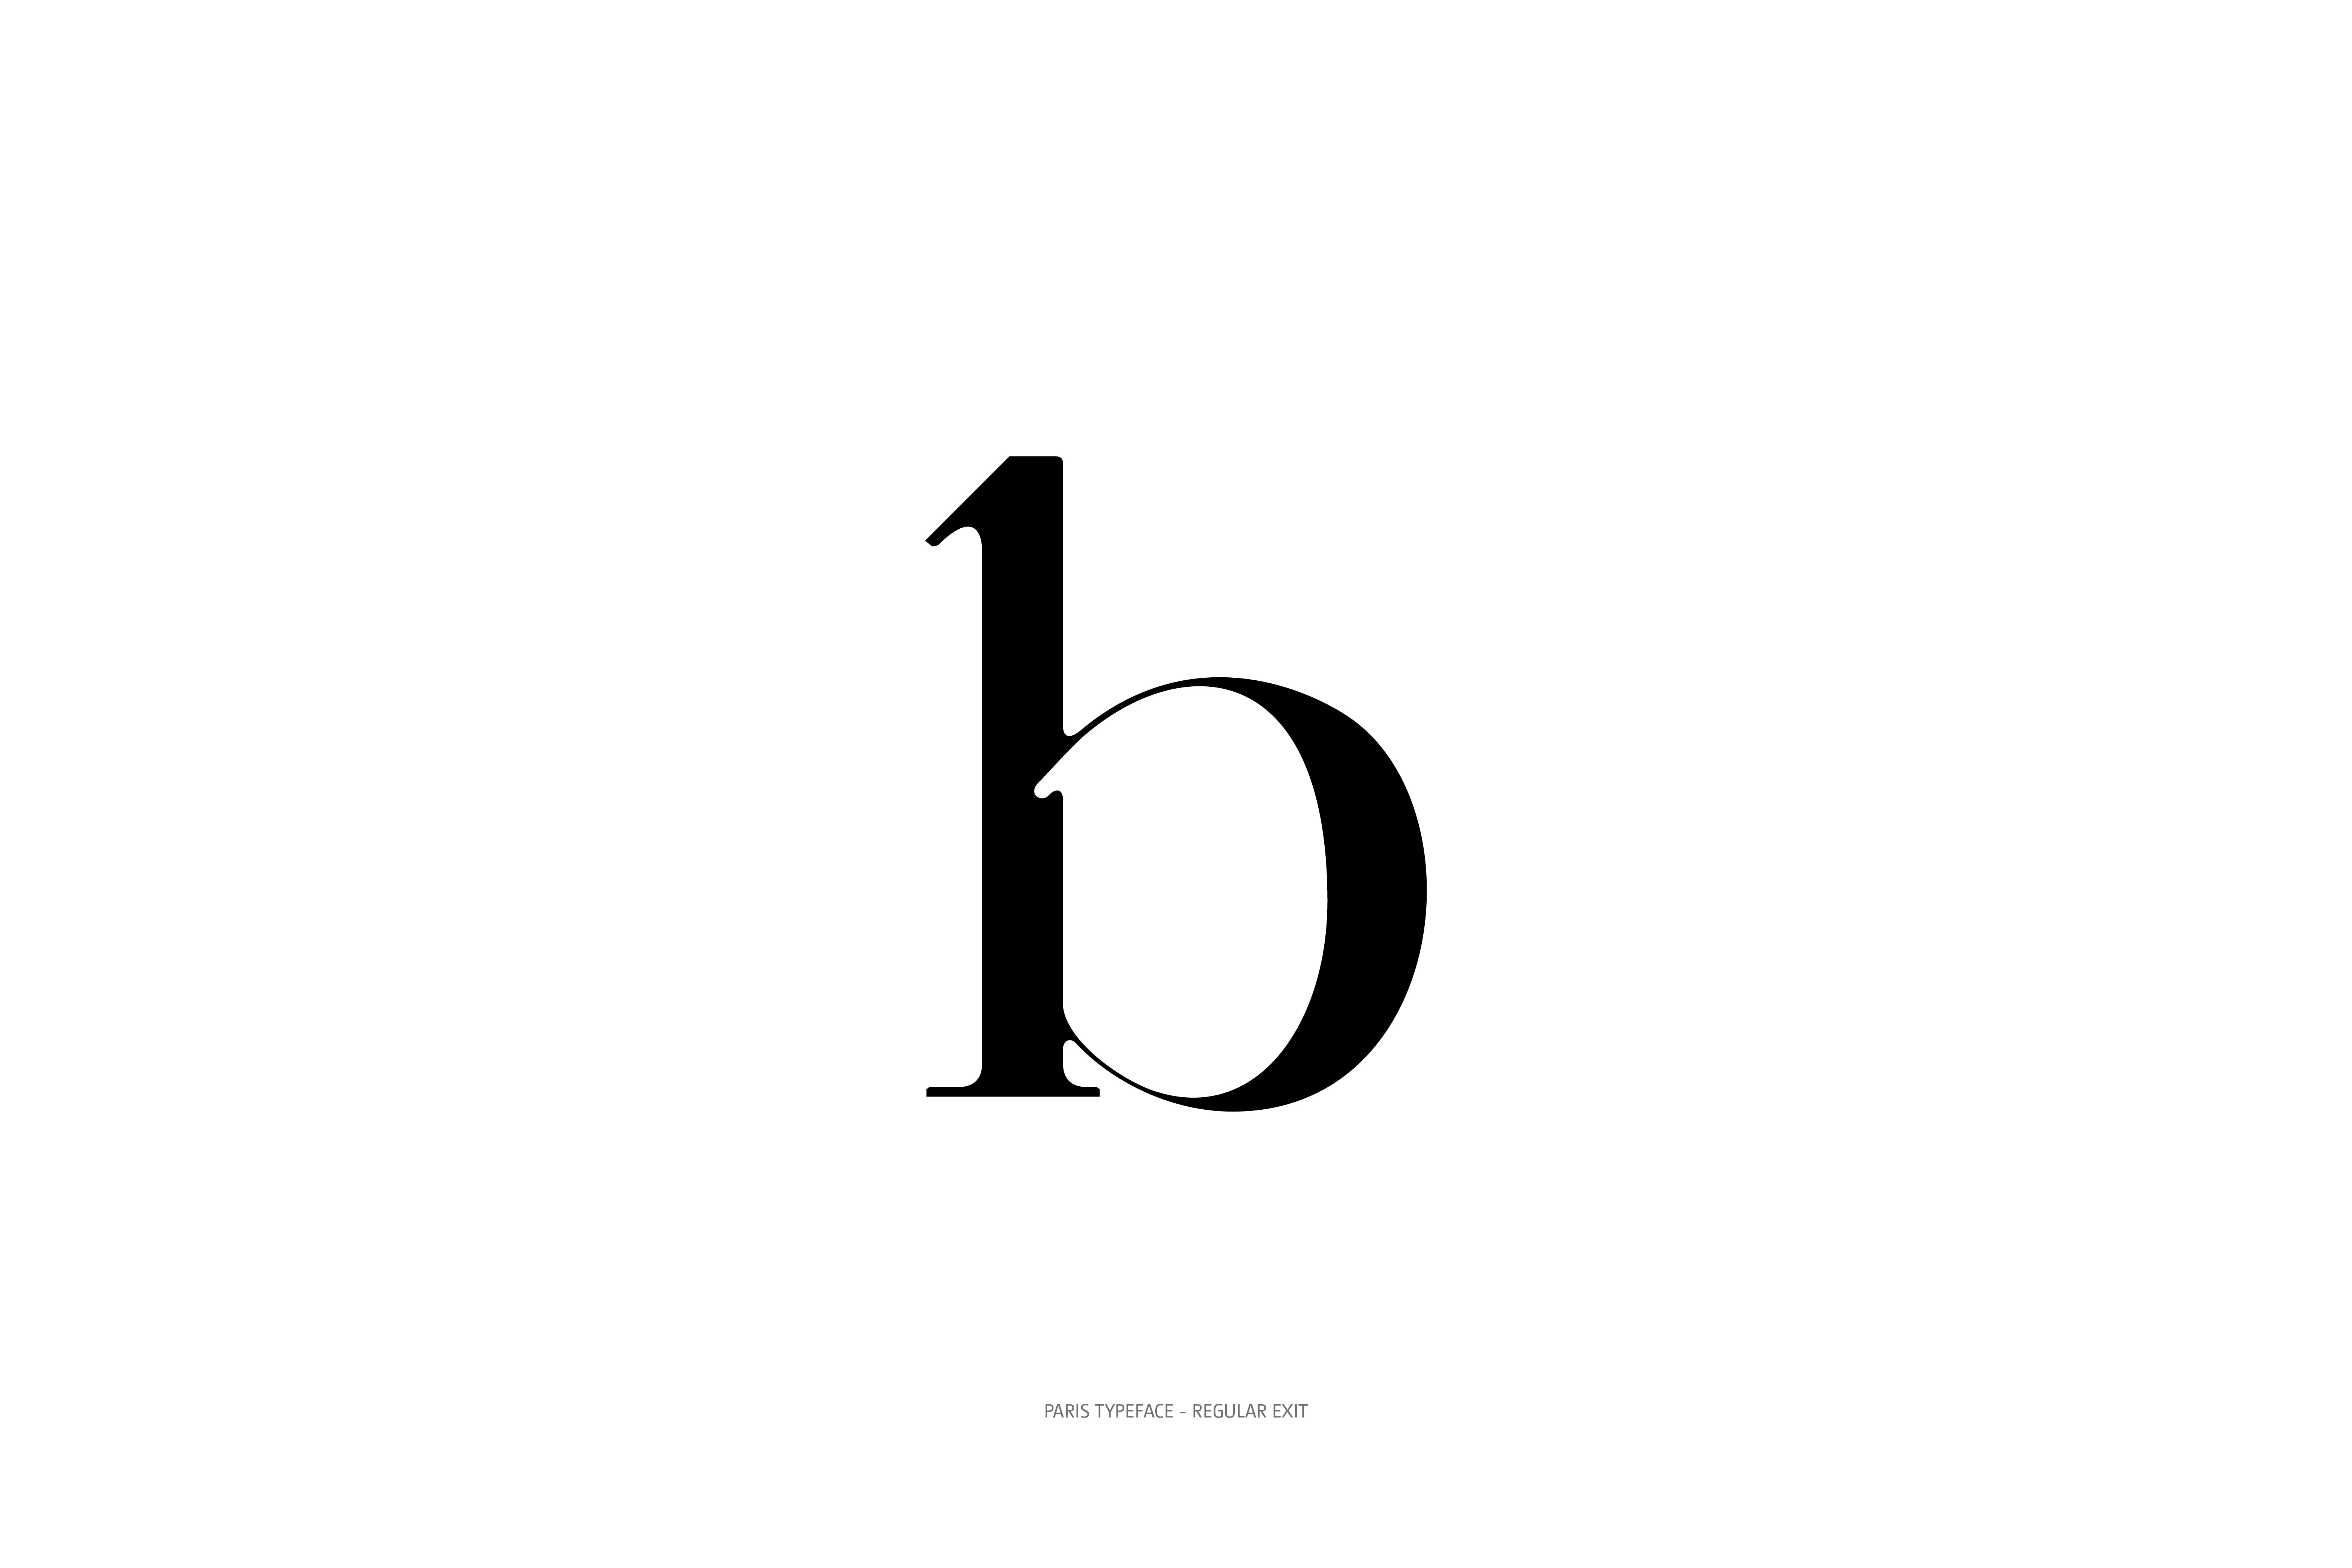 Paris Typeface Regular Exit b